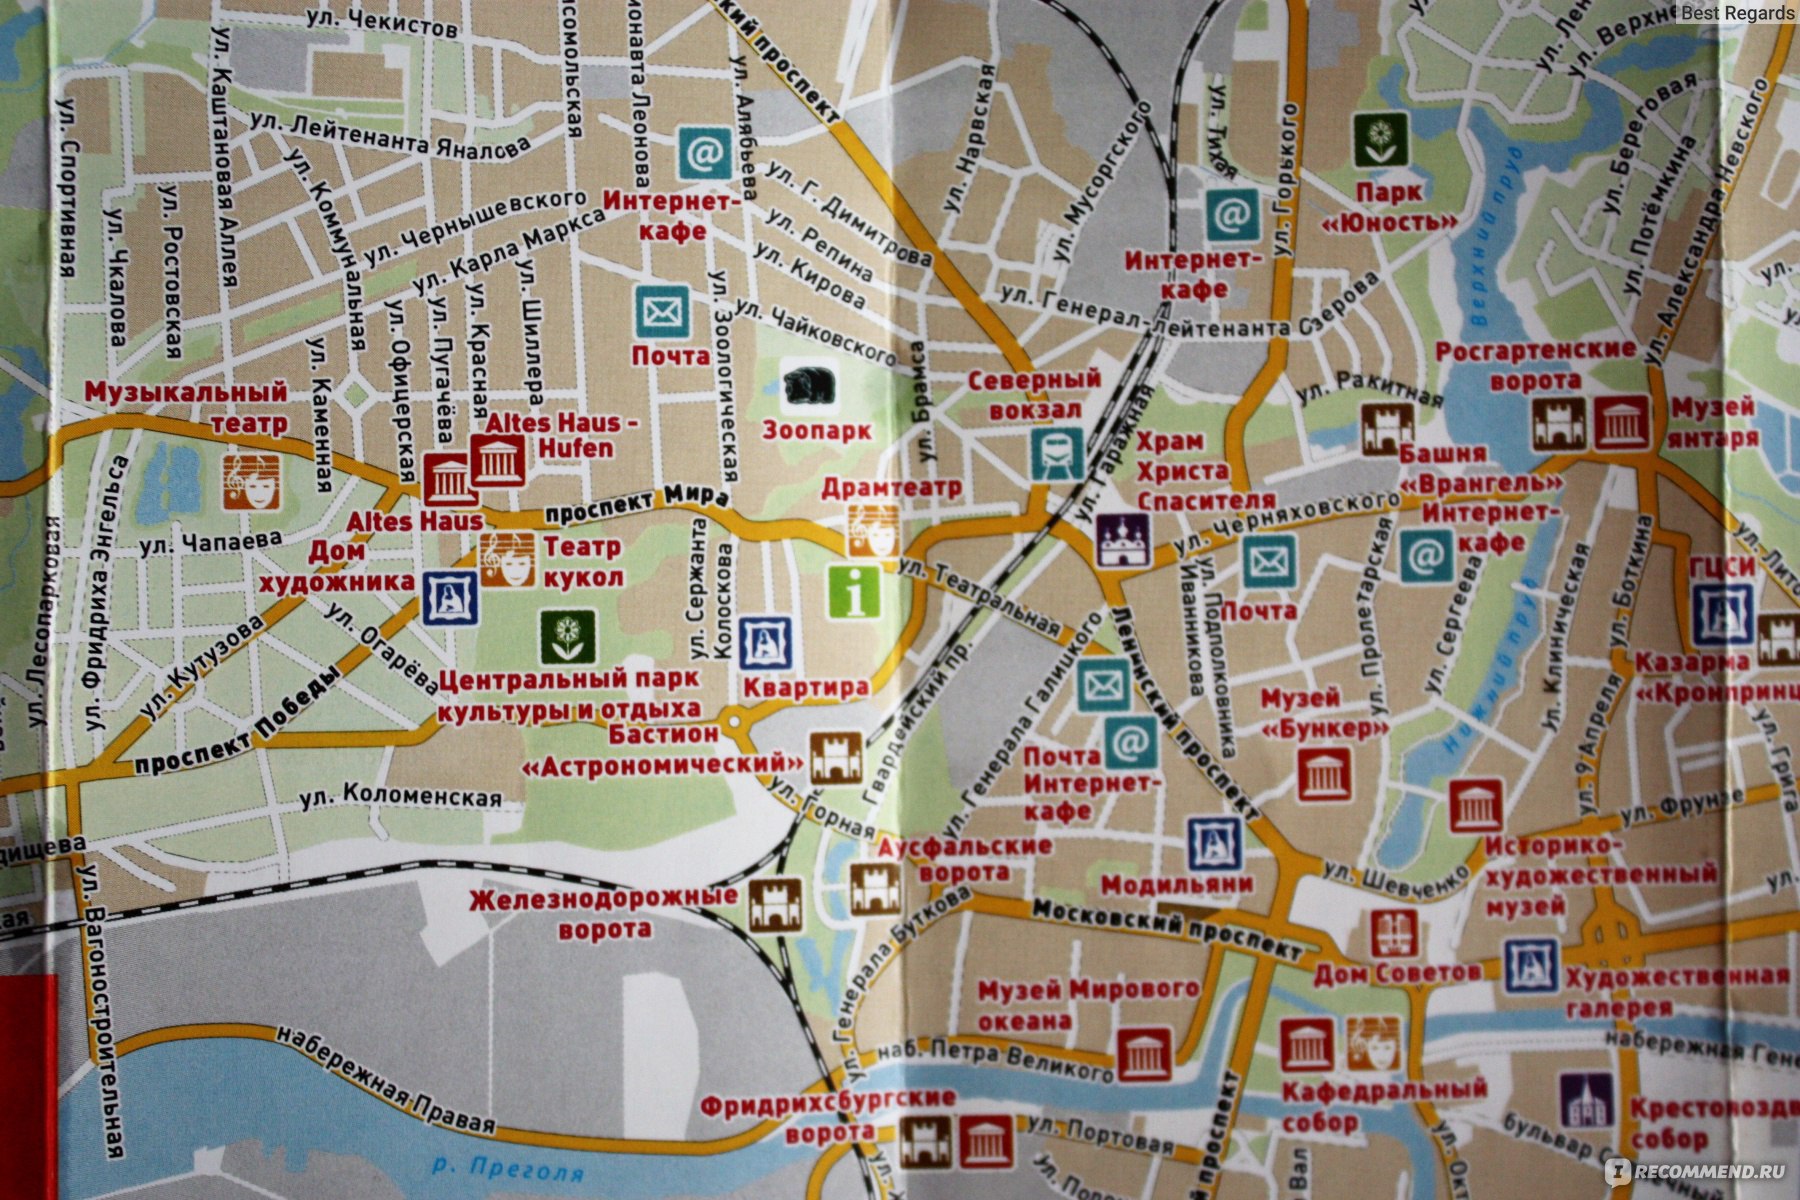 Карта калининграда с достопримечательностями и улицами домами для пешехода